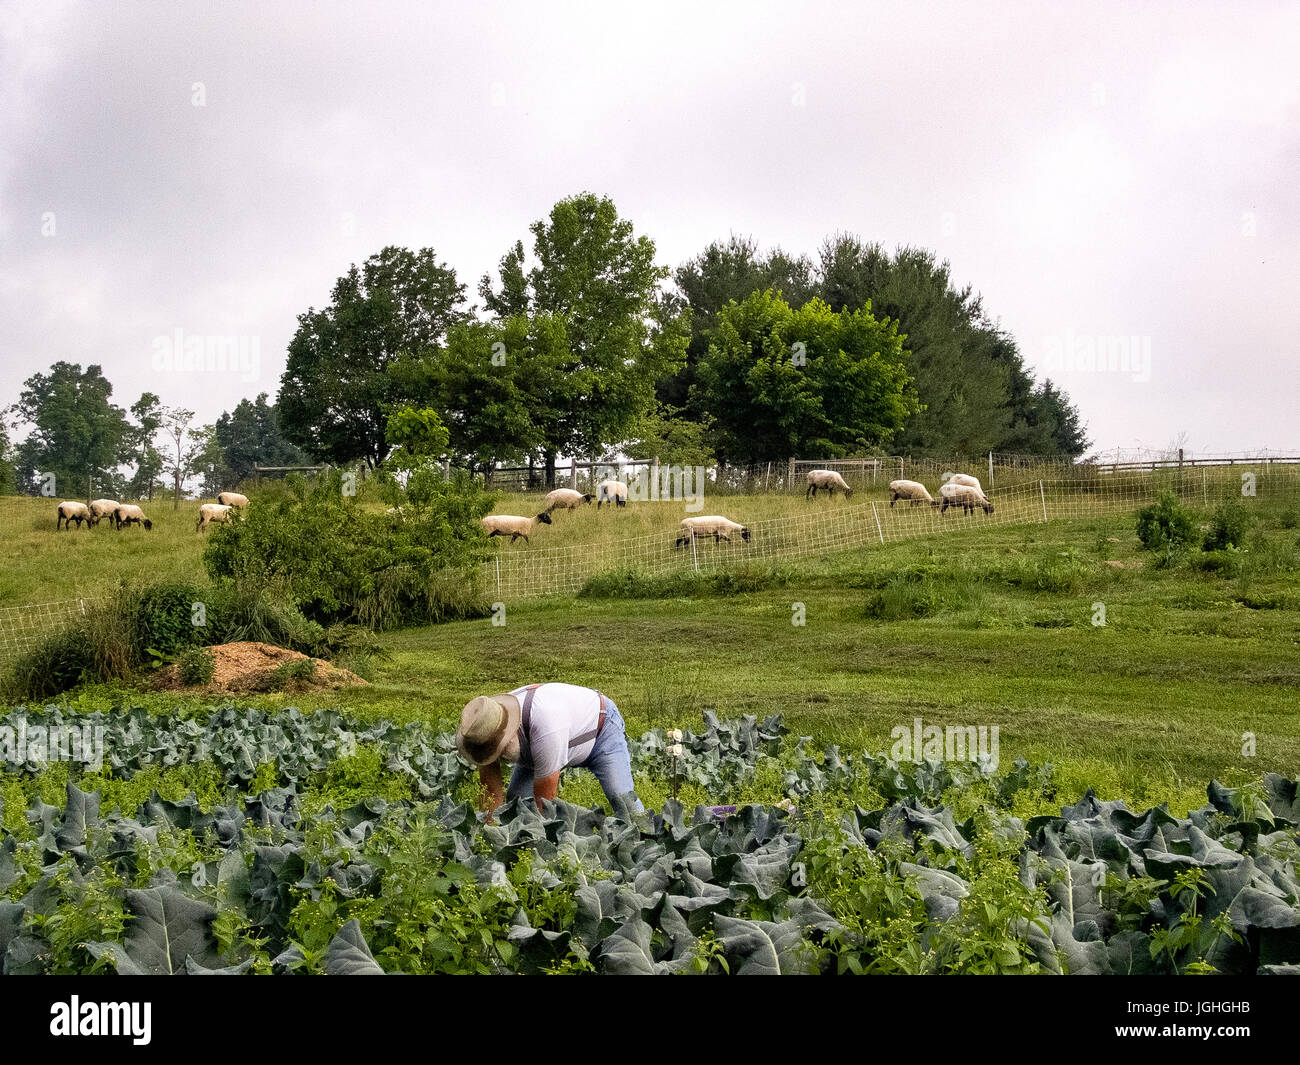 Los varones de más edad, se inclinó agricultor cosechar verdes, las ovejas pastan en hill Foto de stock